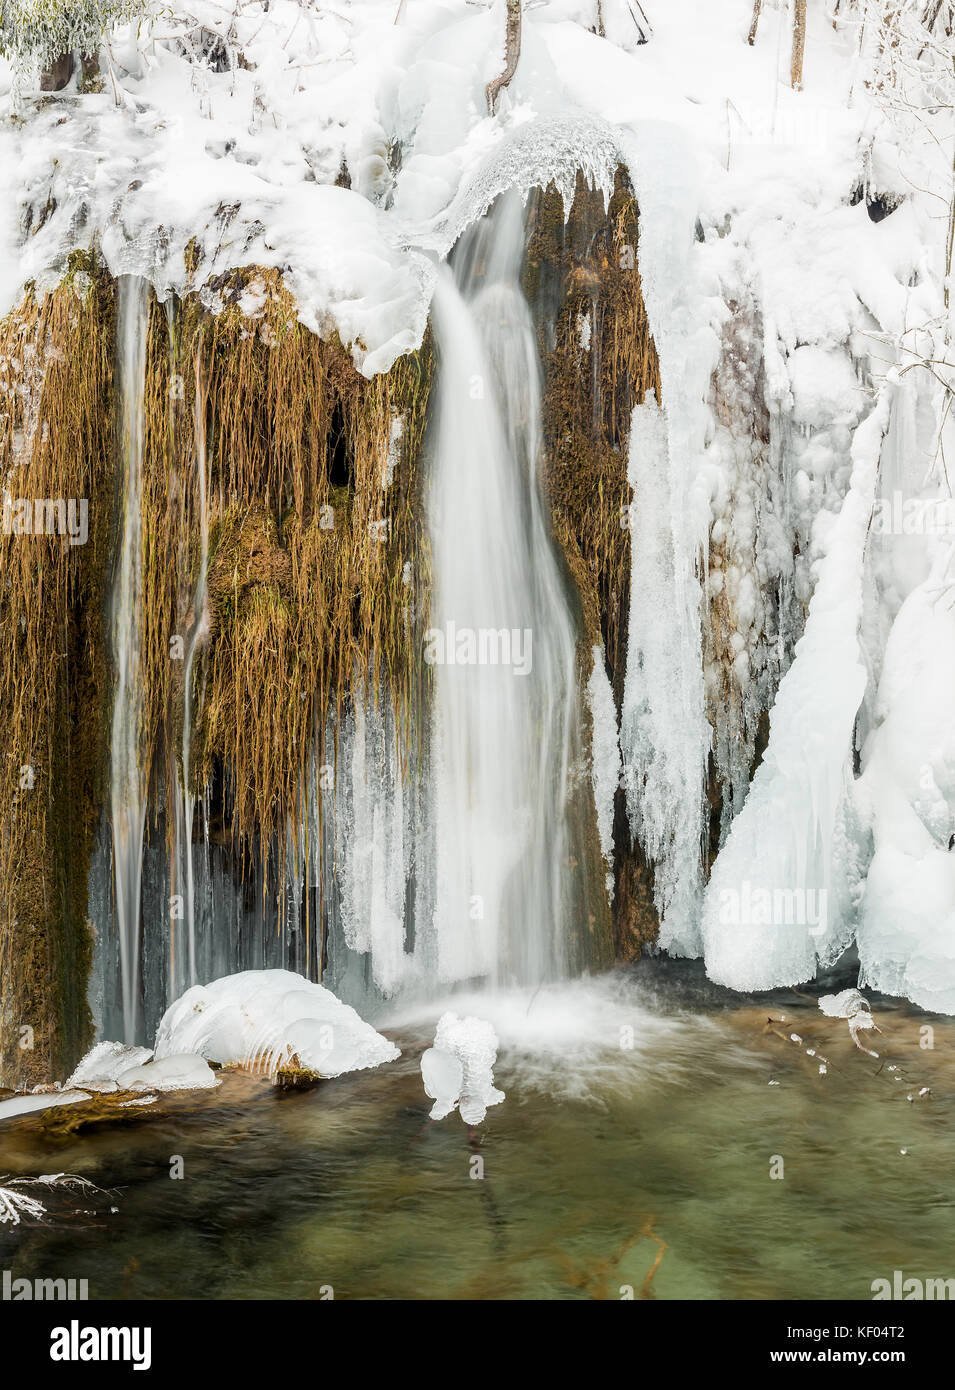 L'eau coule sur les barrages de tuf, le parc national des lacs de Plitvice, Croatie, janvier 2017 Banque D'Images